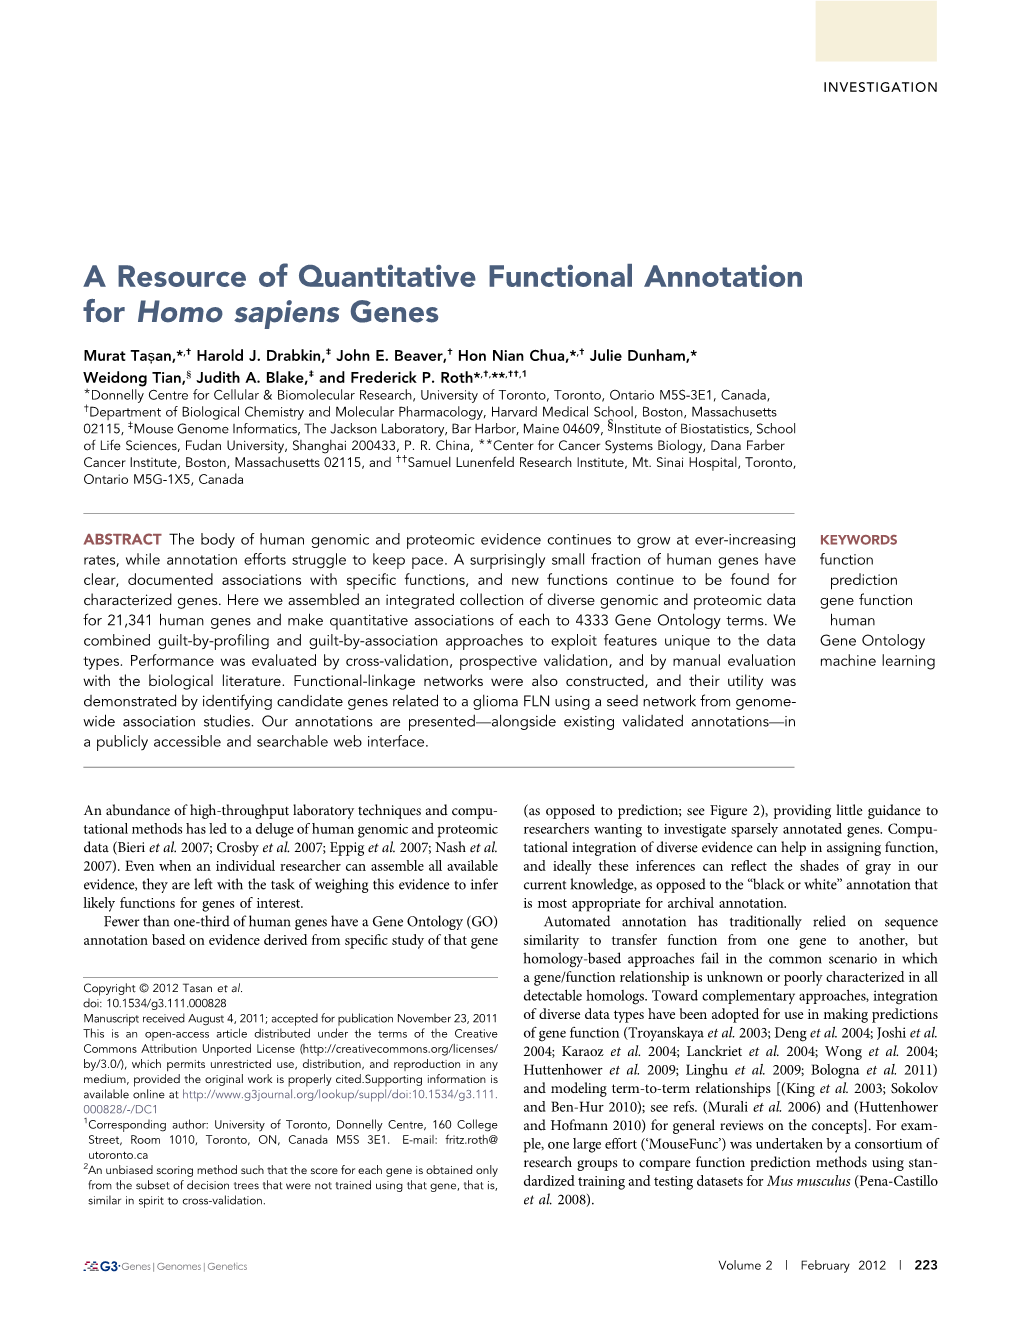 A Resource of Quantitative Functional Annotation for Homo Sapiens Genes